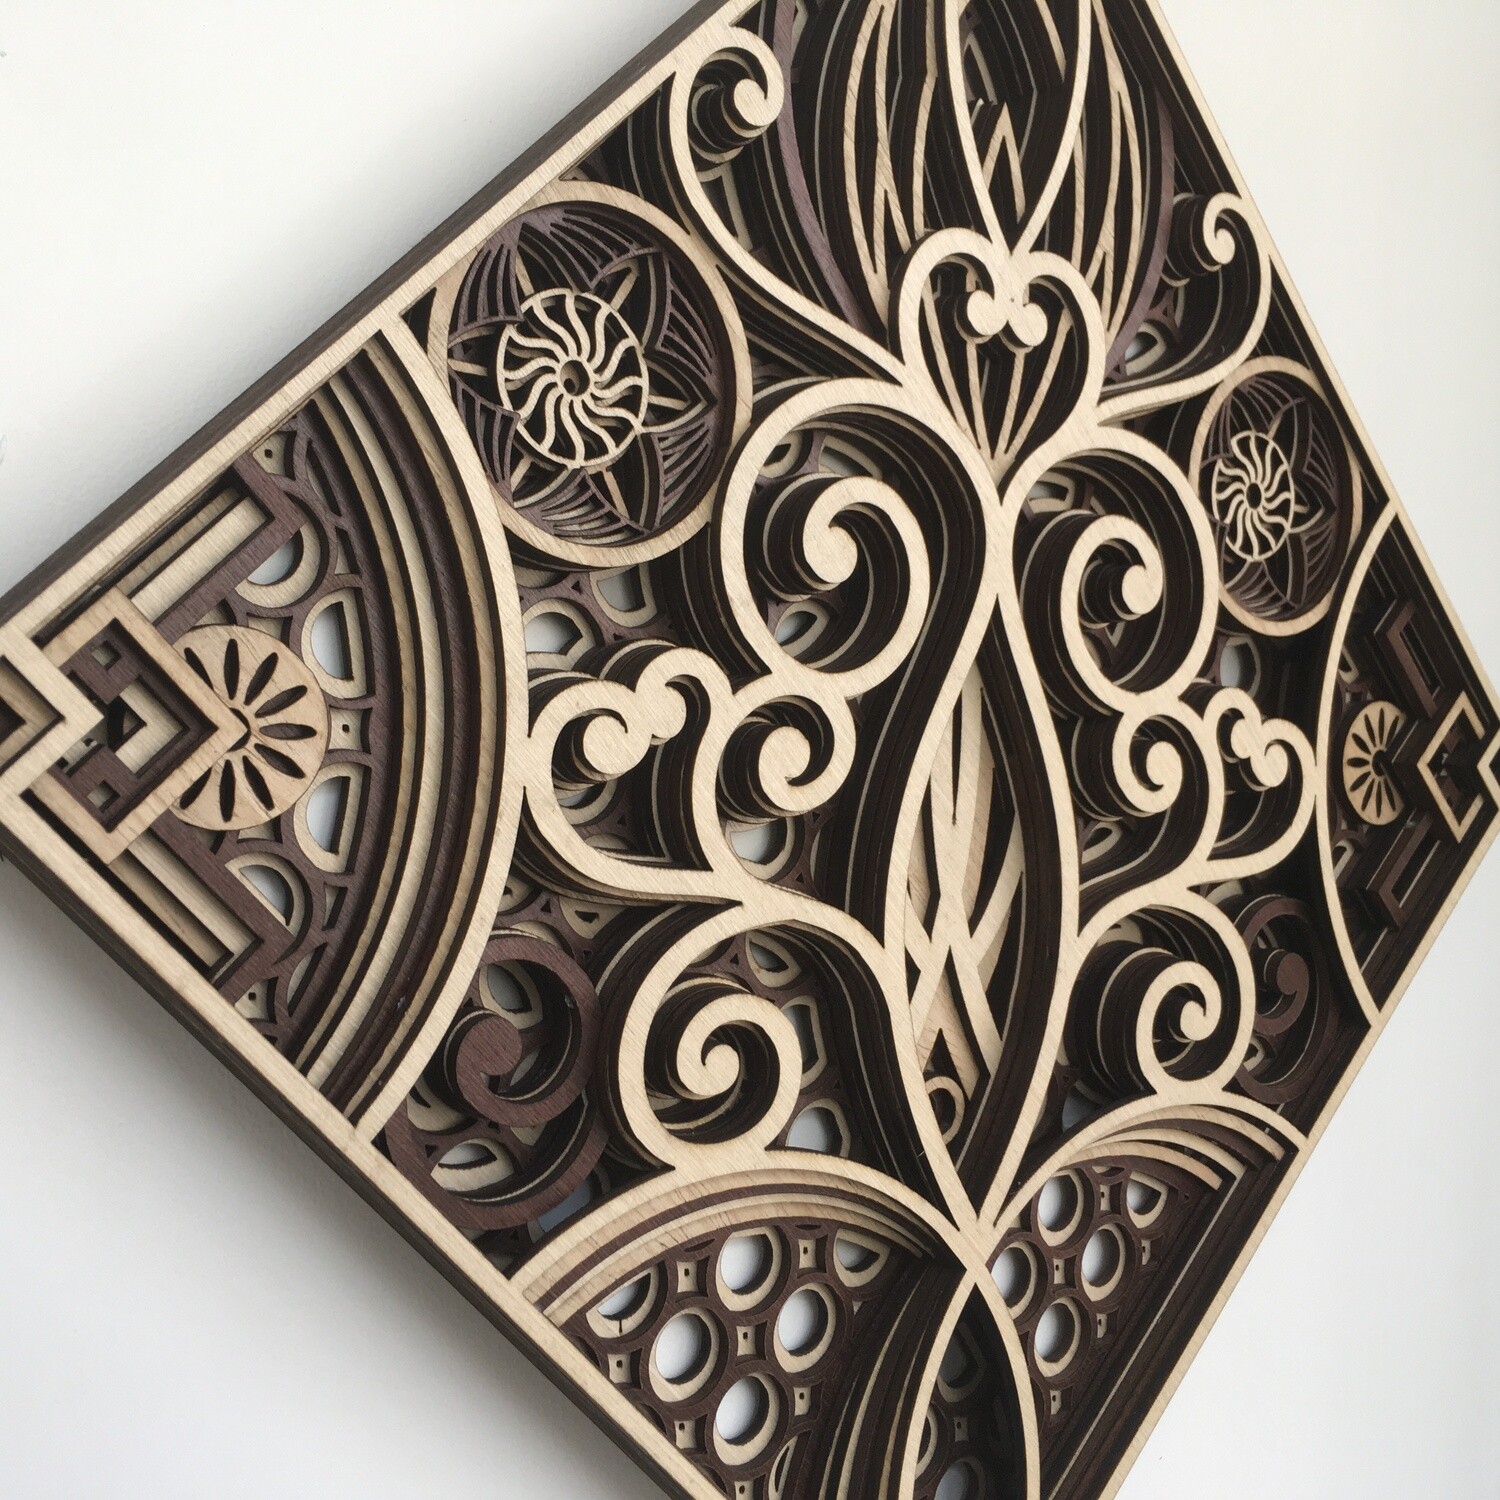 Hydra - Wood Tiles (Wood Wall Hang Decor, Layered Mandala )